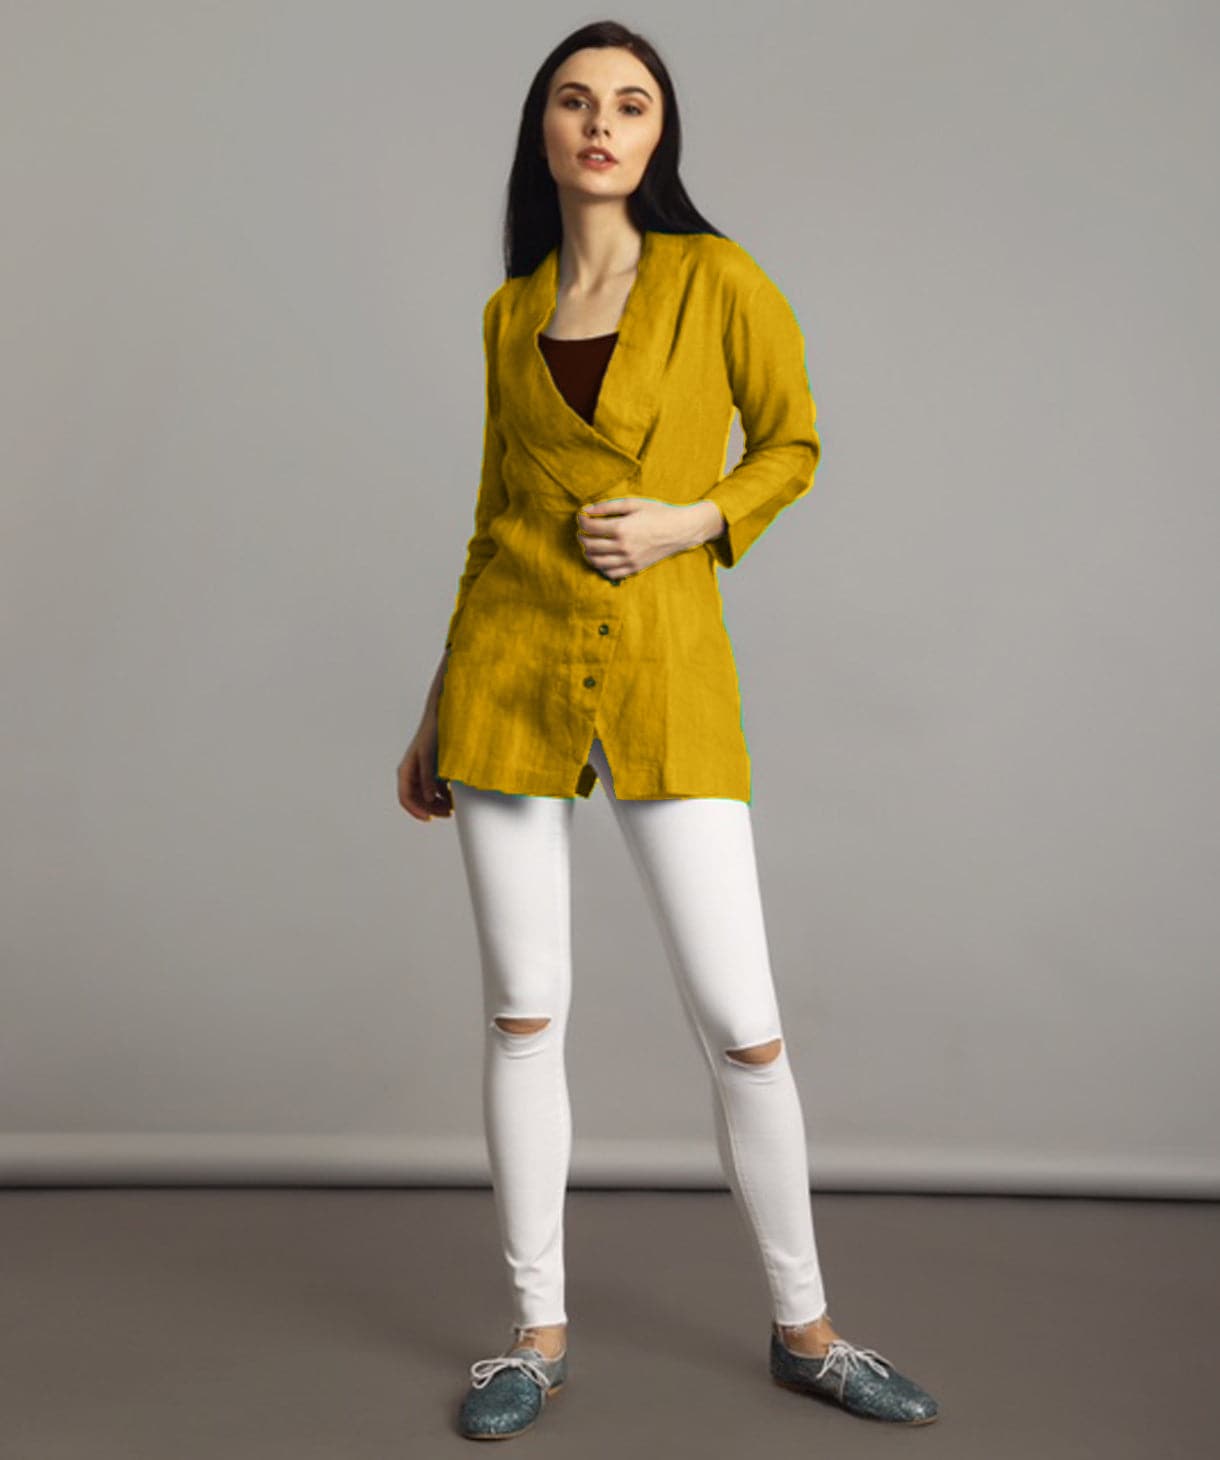 Plus Mustard Linen Jacket Style Tunic - Uptownie